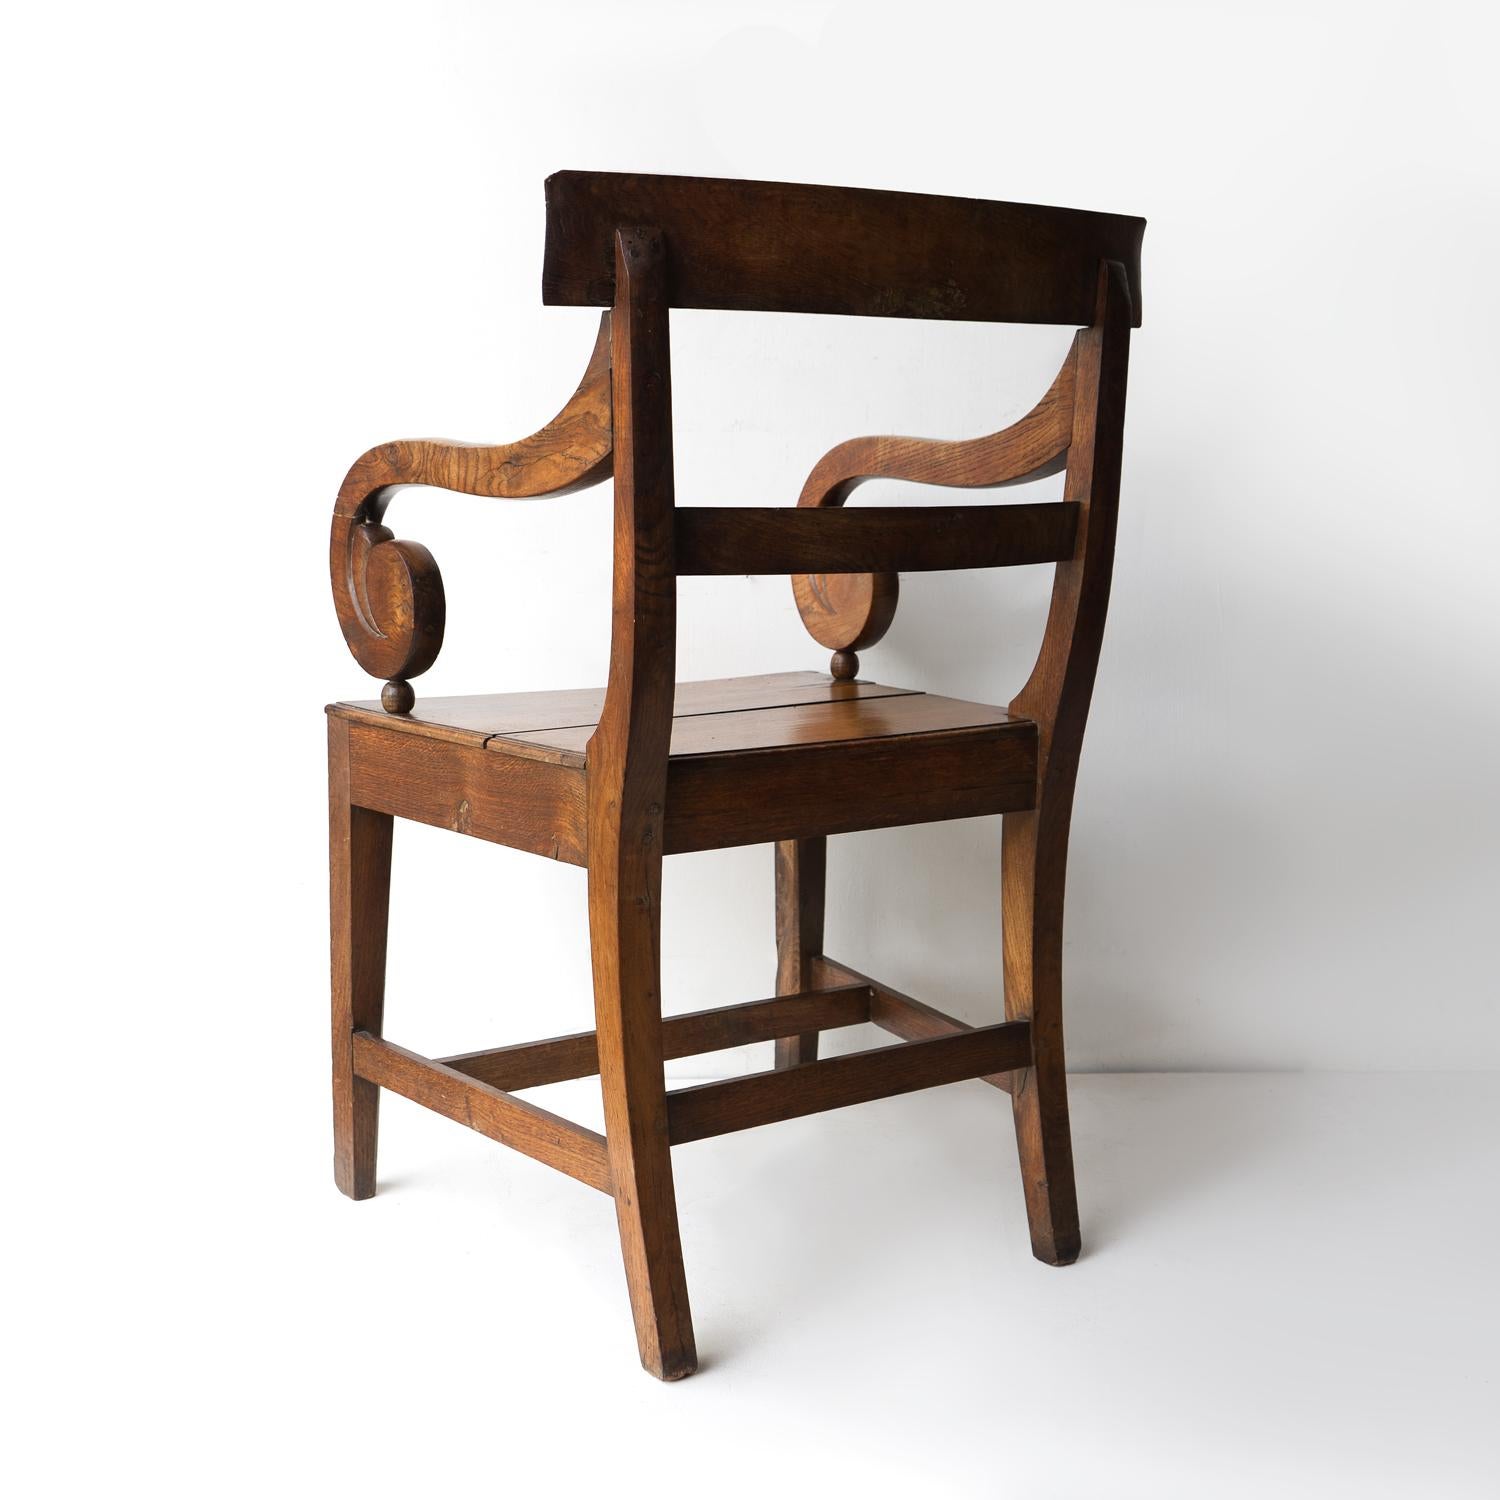 Fait main Fauteuil ancien en chêne à volutes de style Régence, chaise coudée du début du 19e siècle